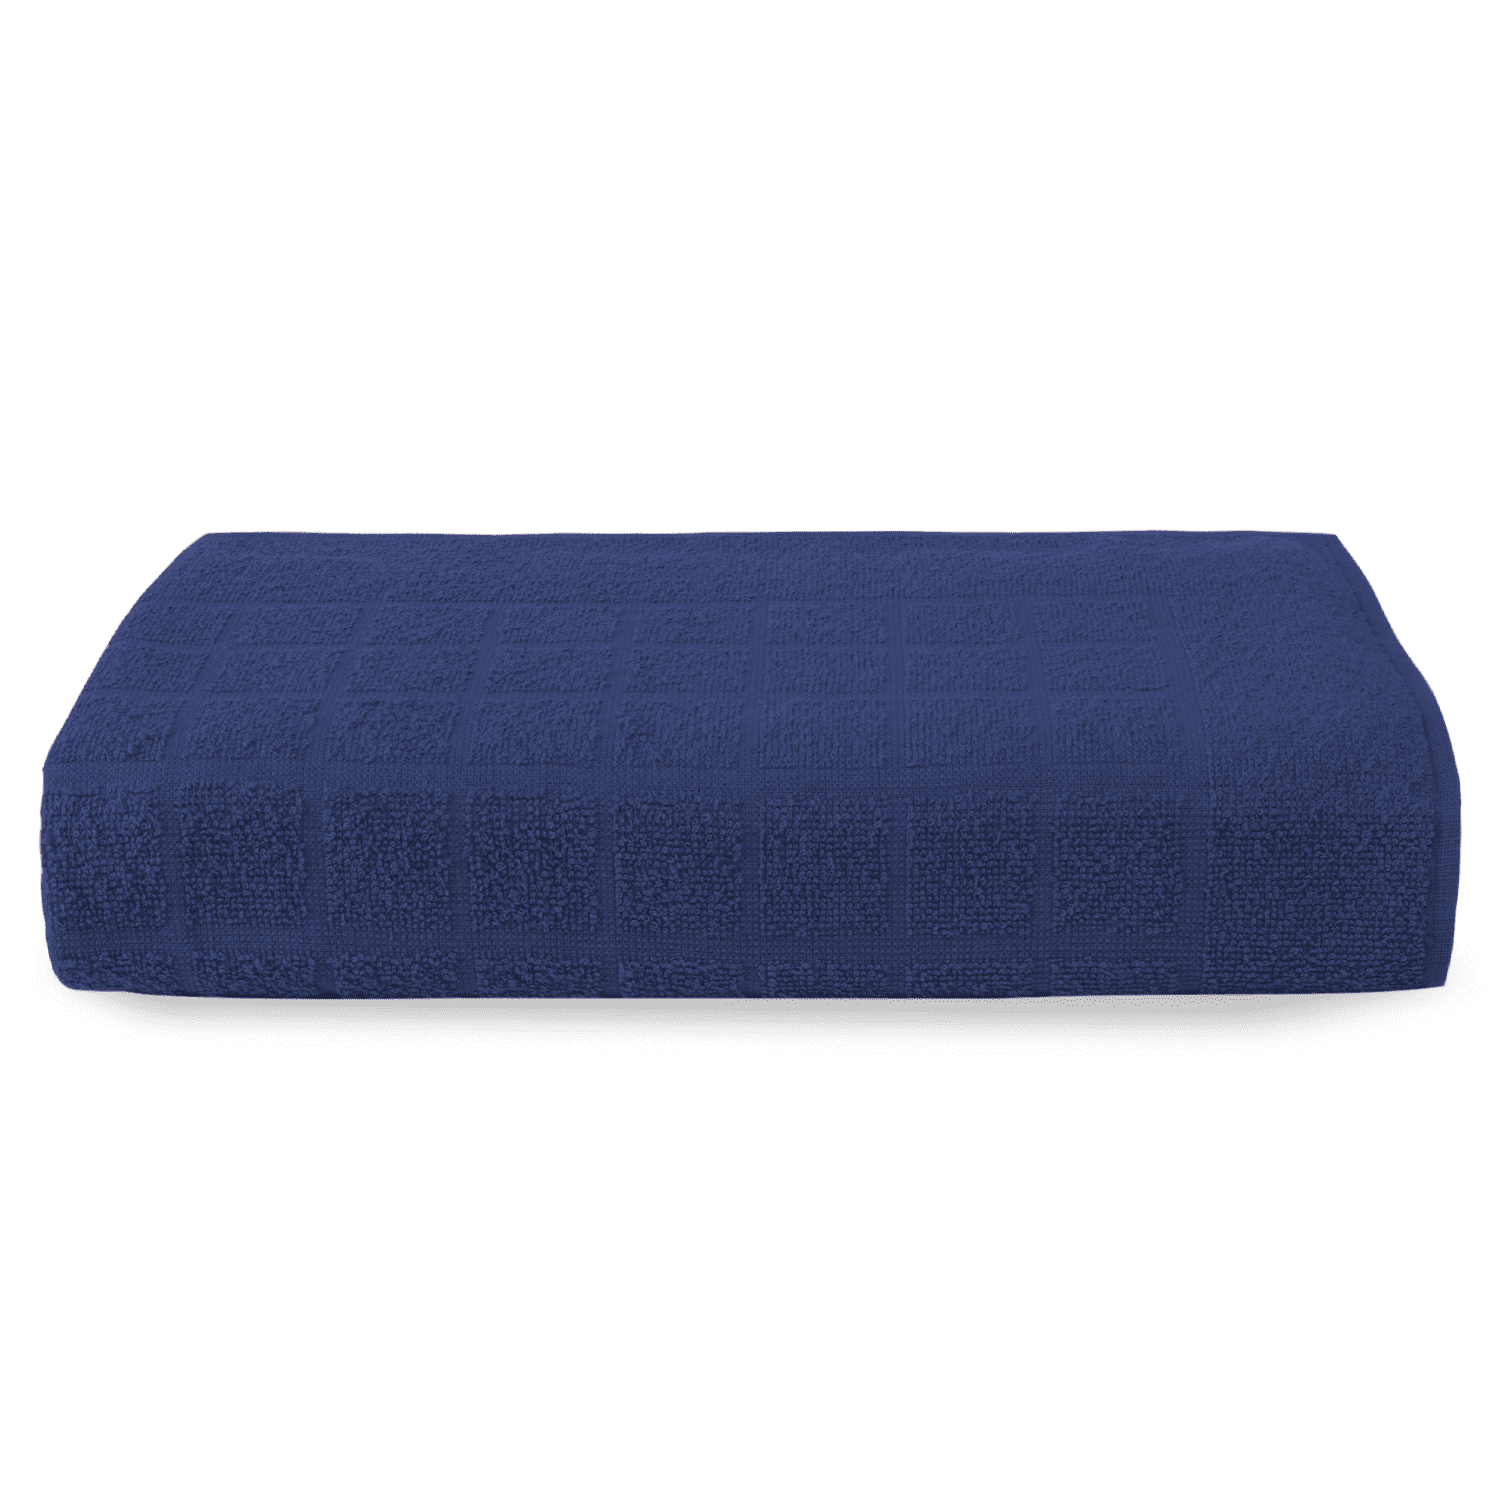 Toalha de Piso em Algodão Premium 75 x 48 cm - Azul Marinho